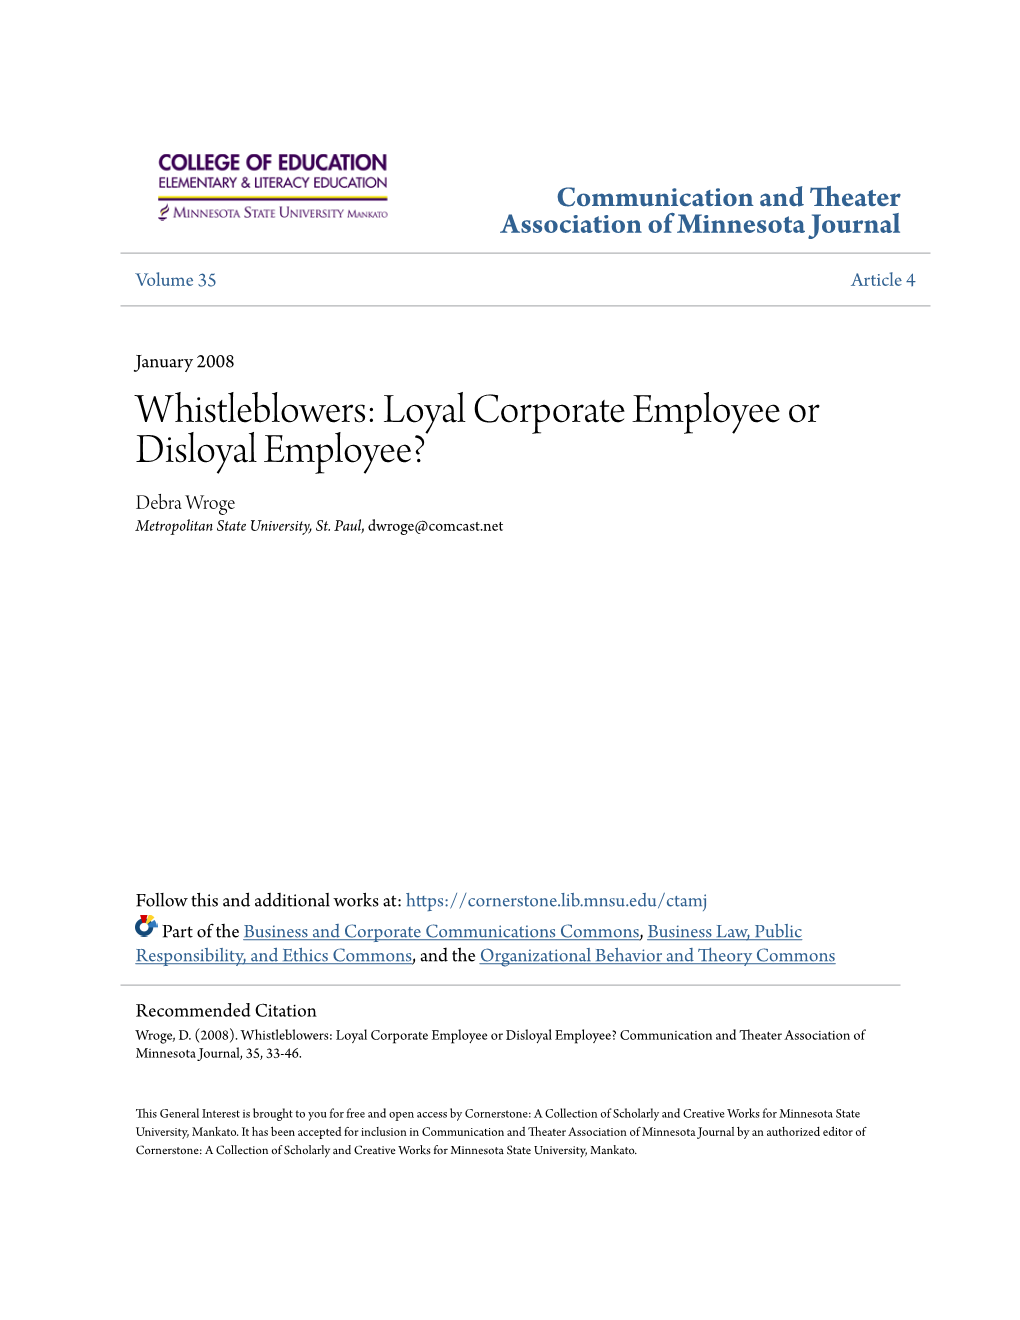 Whistleblowers: Loyal Corporate Employee Or Disloyal Employee? Debra Wroge Metropolitan State University, St